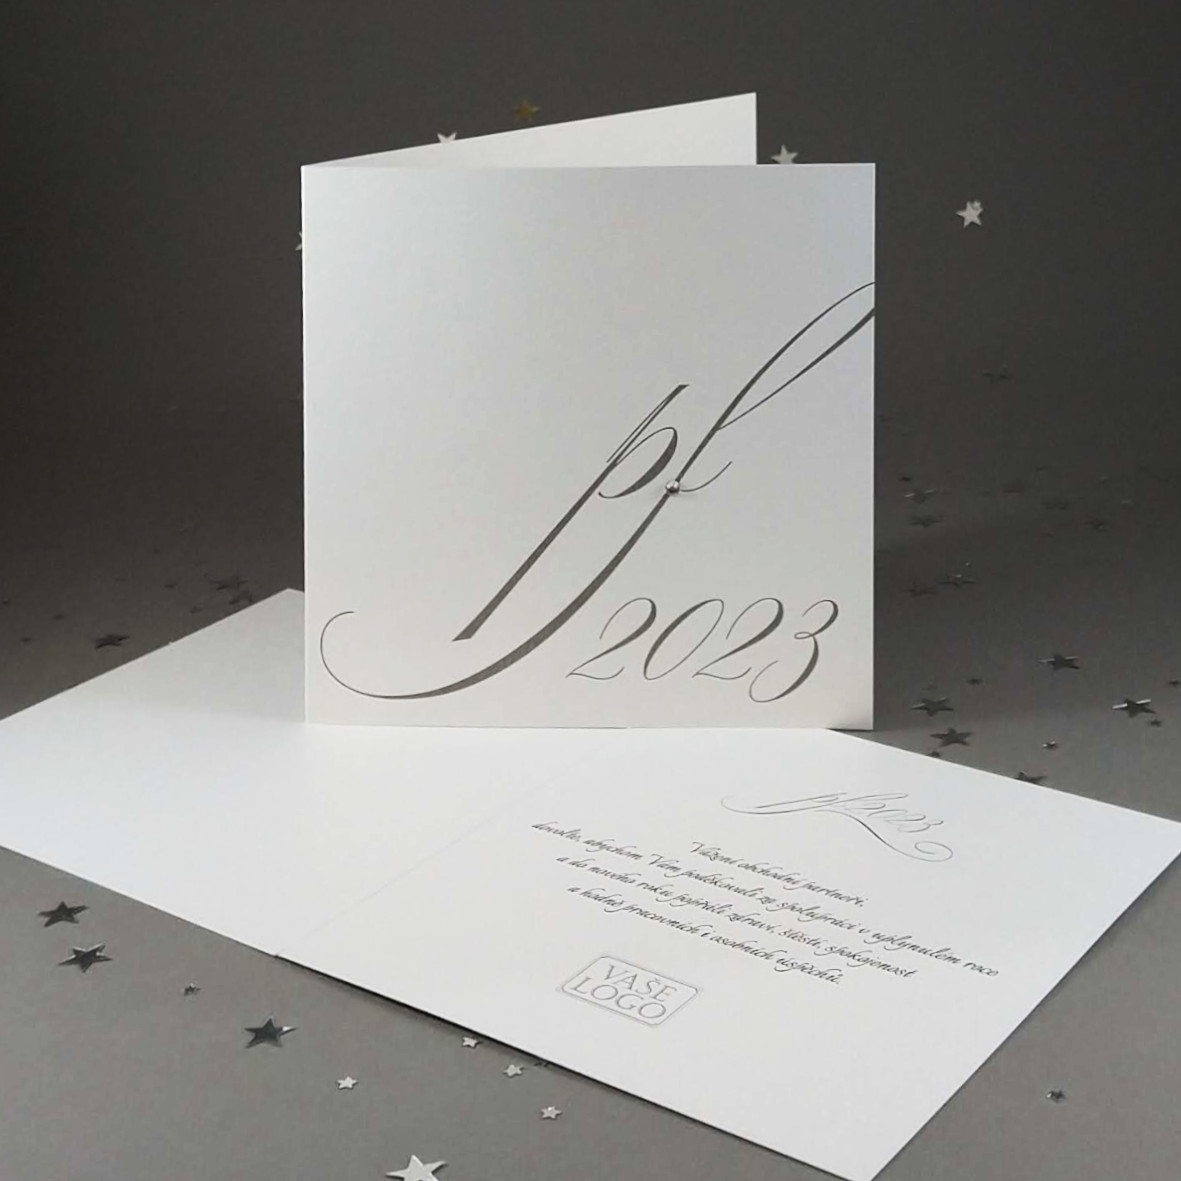 Novoroční–vánoční přání s elegantním motivem pf2024 s ledovým krystalem. Otevírací, formát 140 × 140 mm, digitální tisk, bílý perleťový papír se zlatavým odleskem.